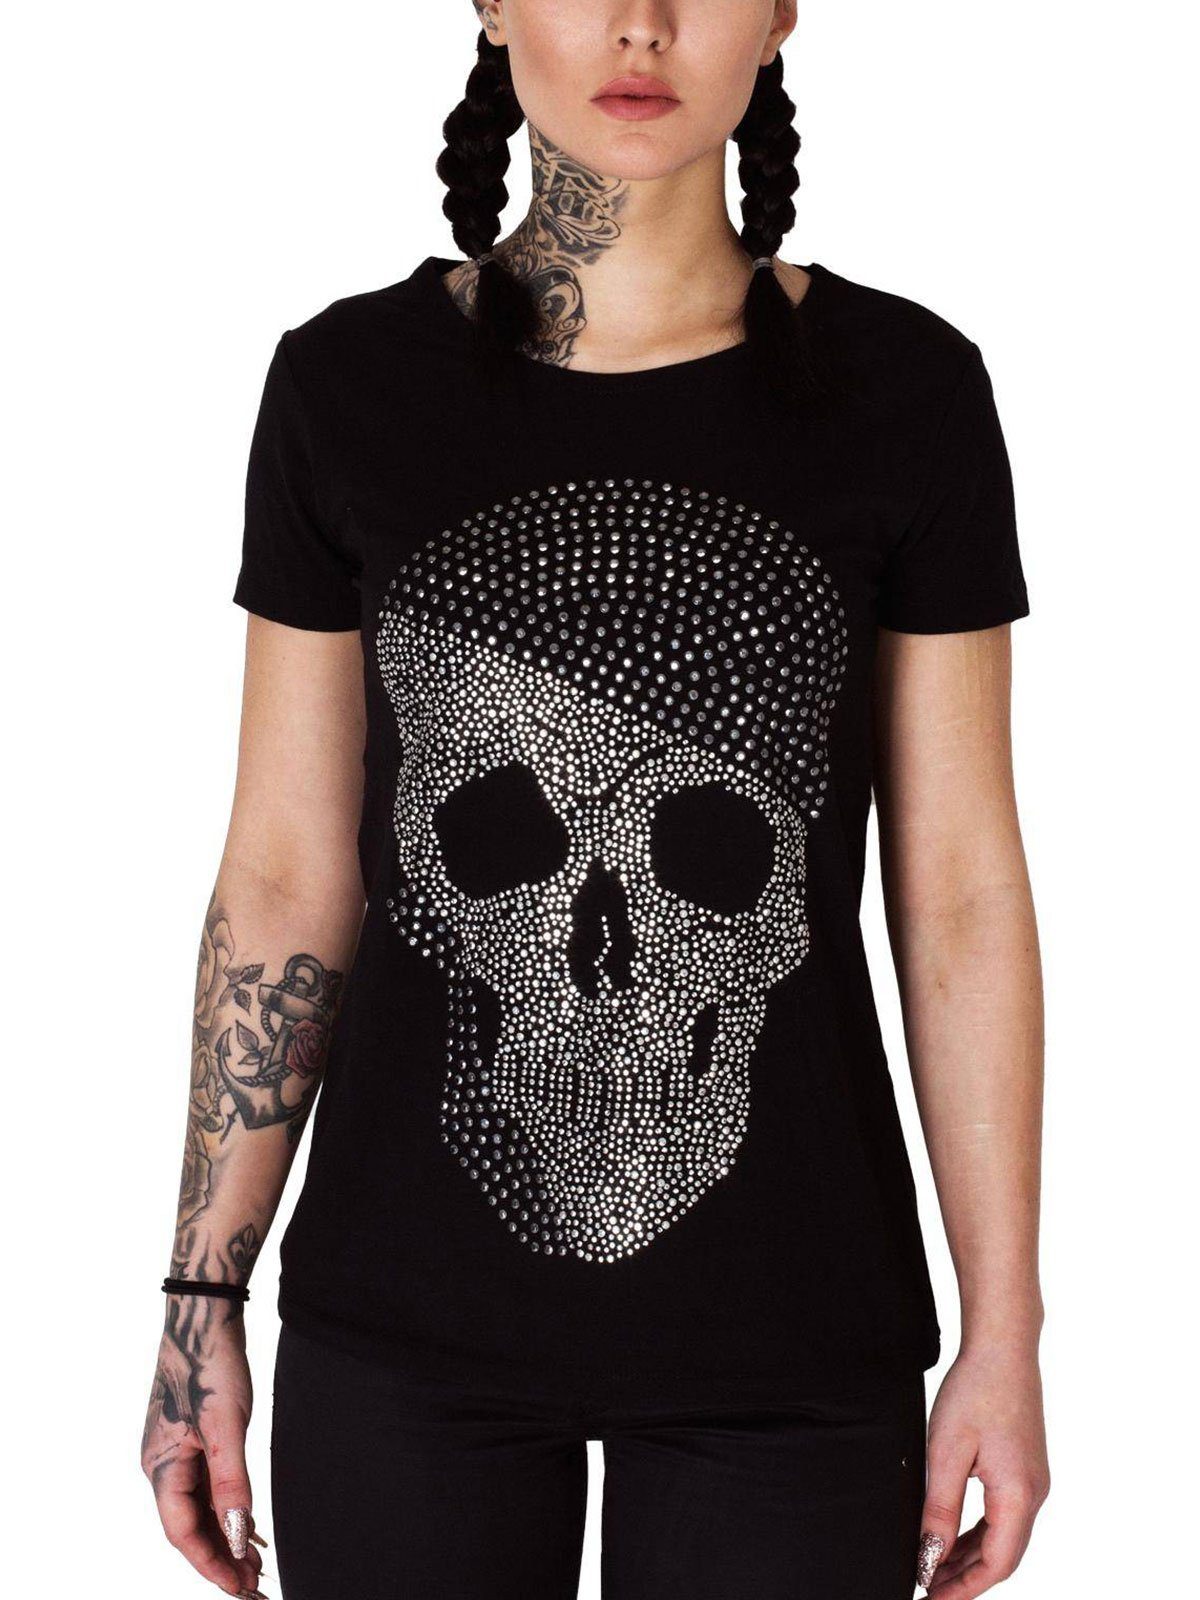 Kefali Cologne T-Shirt »Totenkopf Shirt mit echtem Strassstein« Schwarz,  KC7092 online kaufen | OTTO